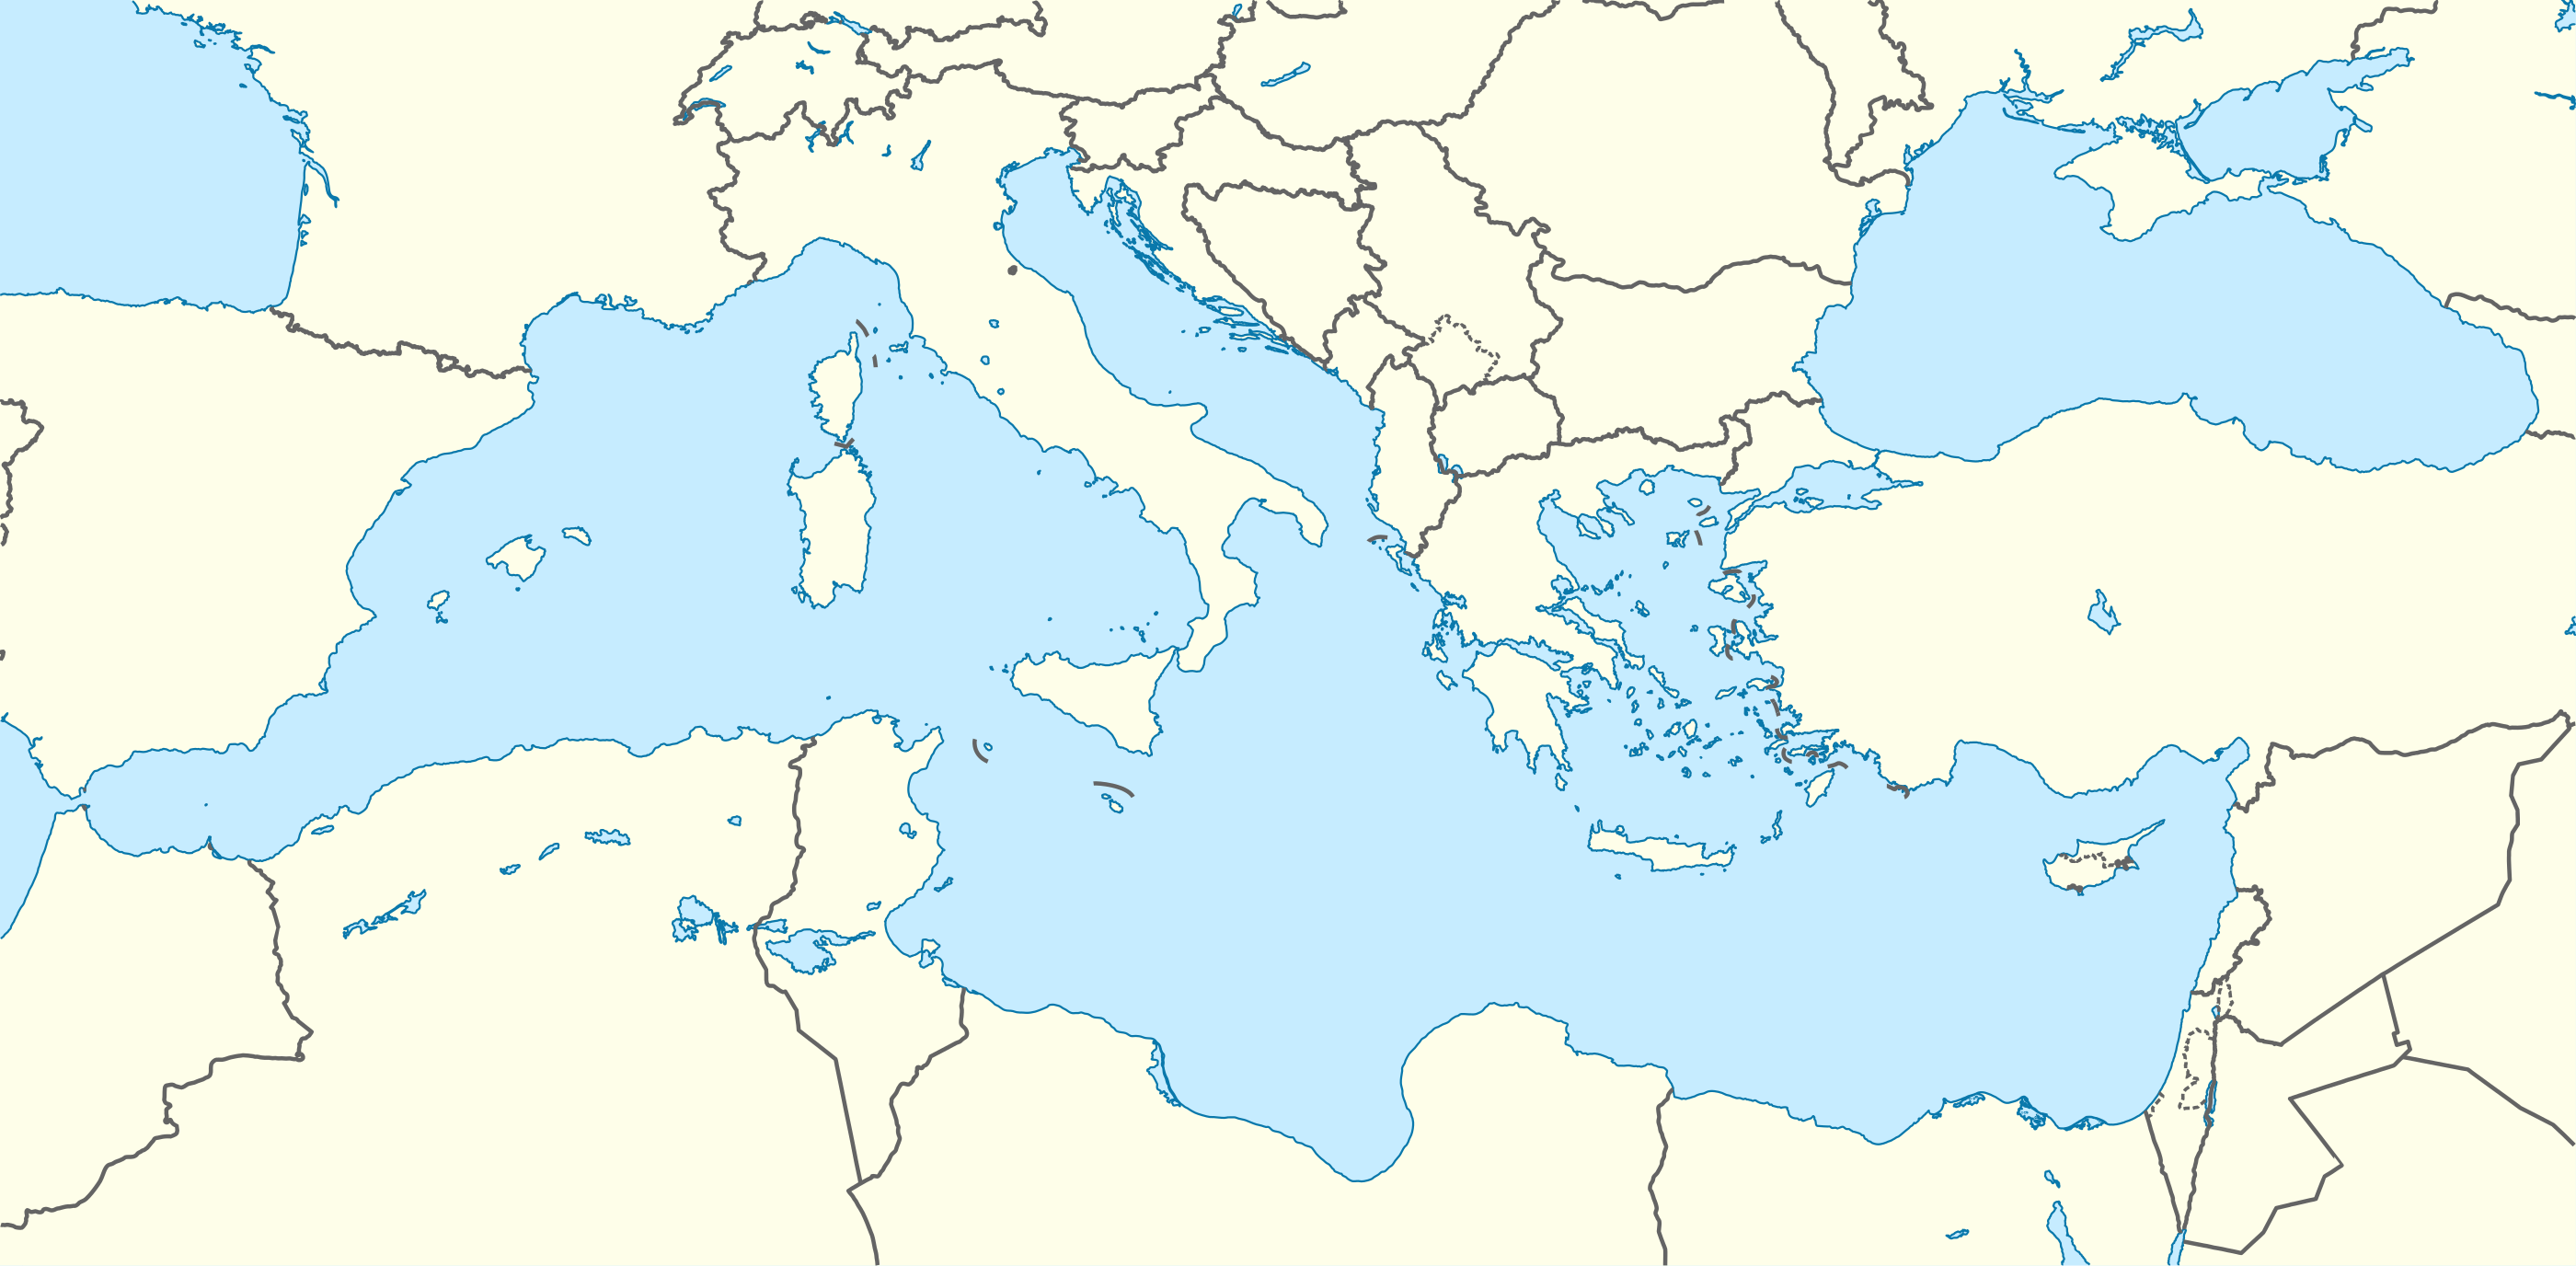 خريطة البحر المتوسط تبين مواقع نقاط ترسيم حدود مصر الاقتصادية مع قبرص واليونان. Bosworth is in the centre، بين دمياط وليماسول.